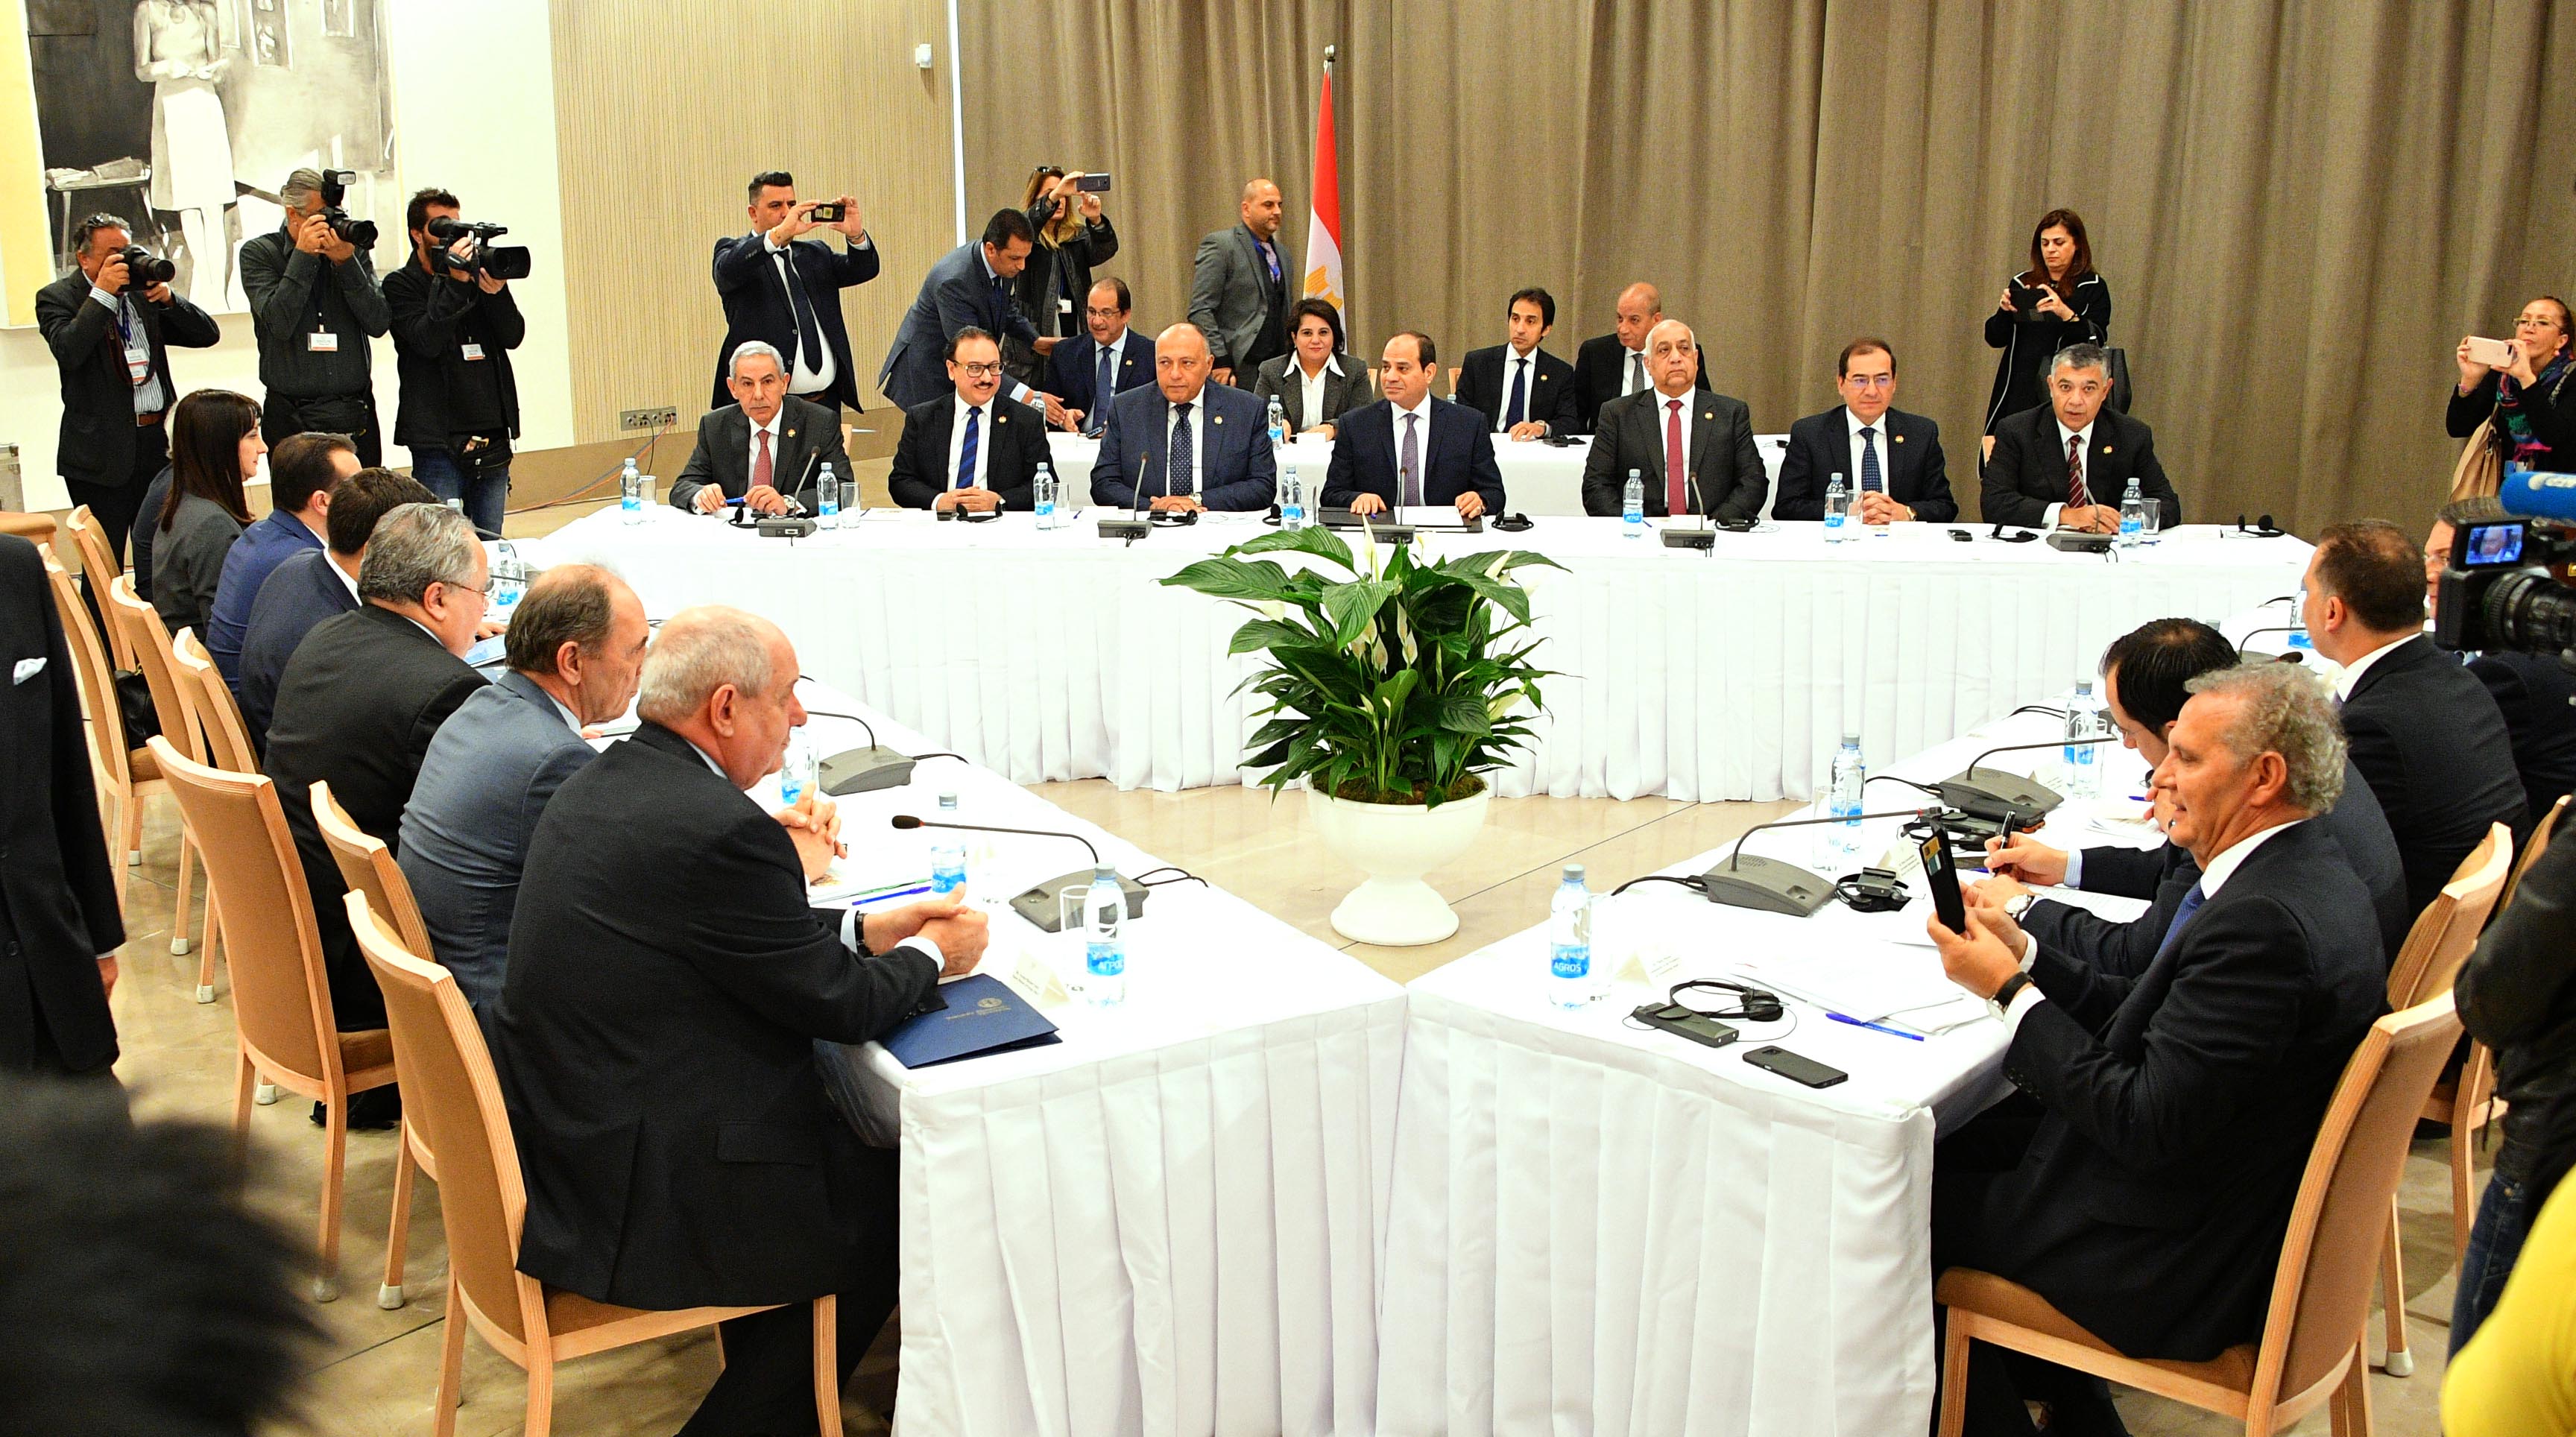 صور المؤتمر الصحفى مع زعماء قبرص واليونان (3)